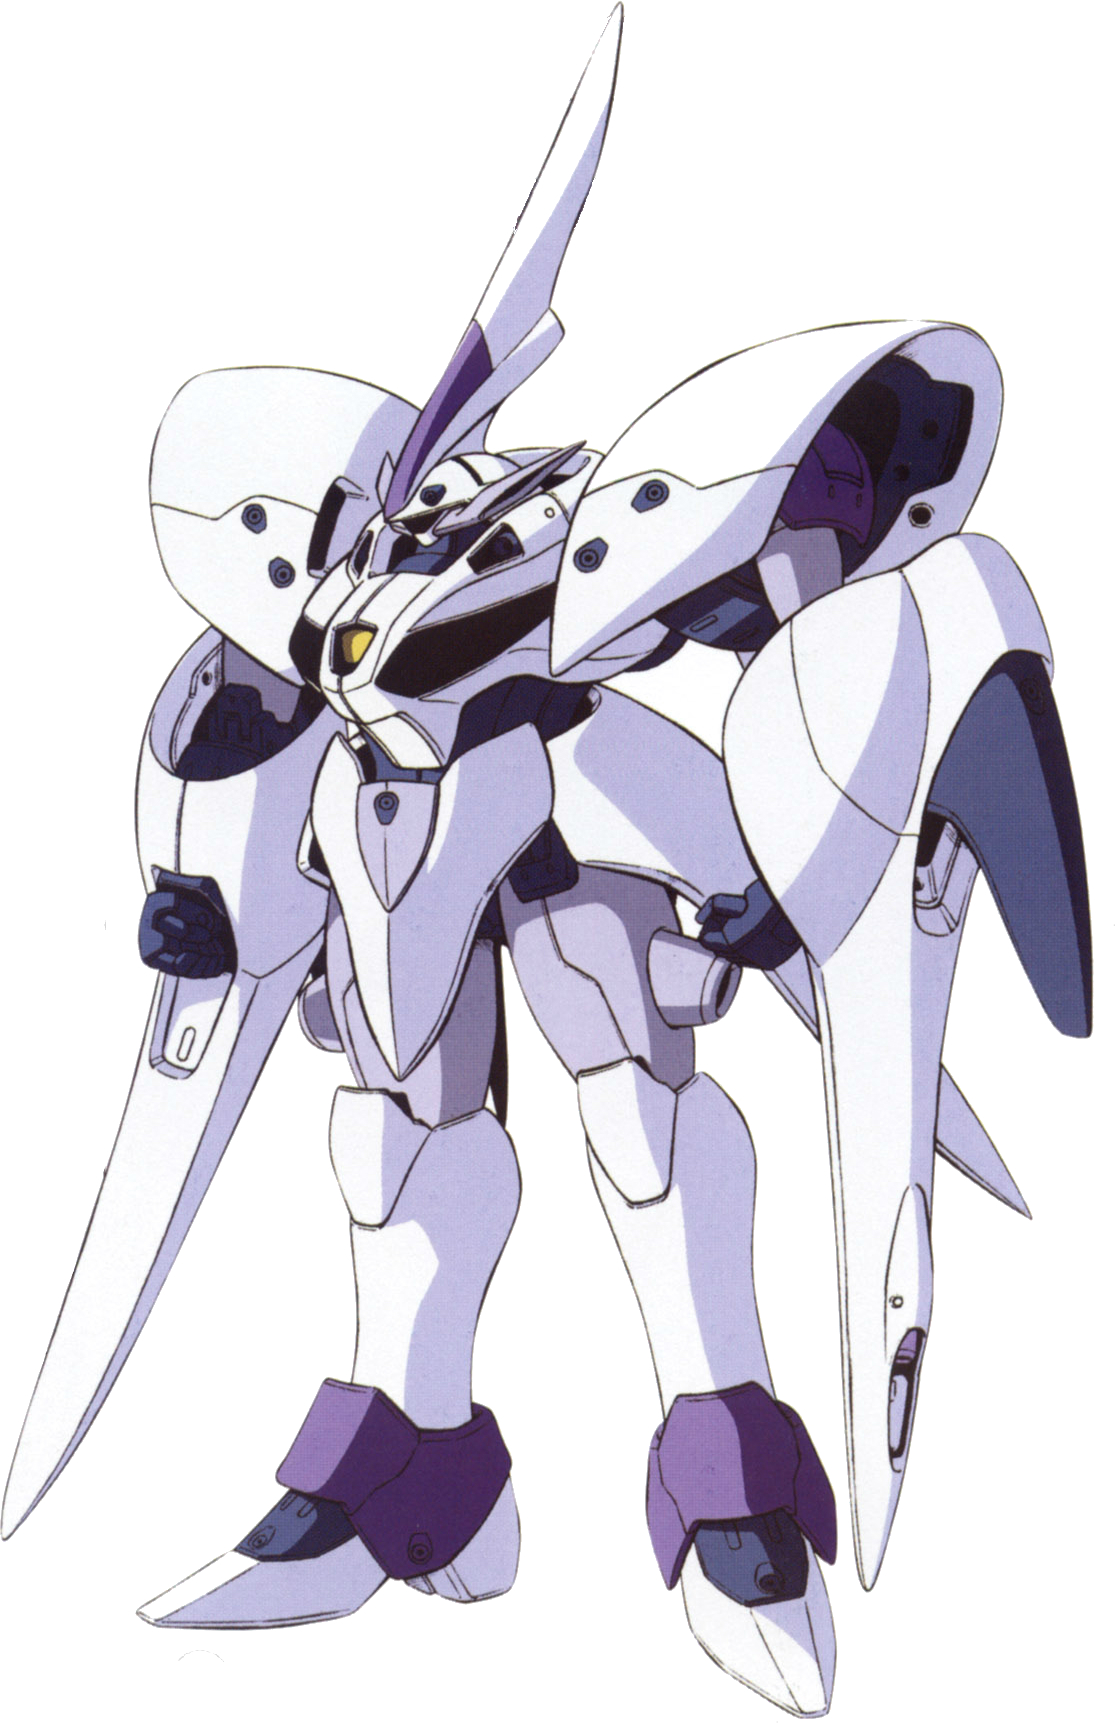 RMSN-008 Bertigo | The Gundam Wiki | Fandom